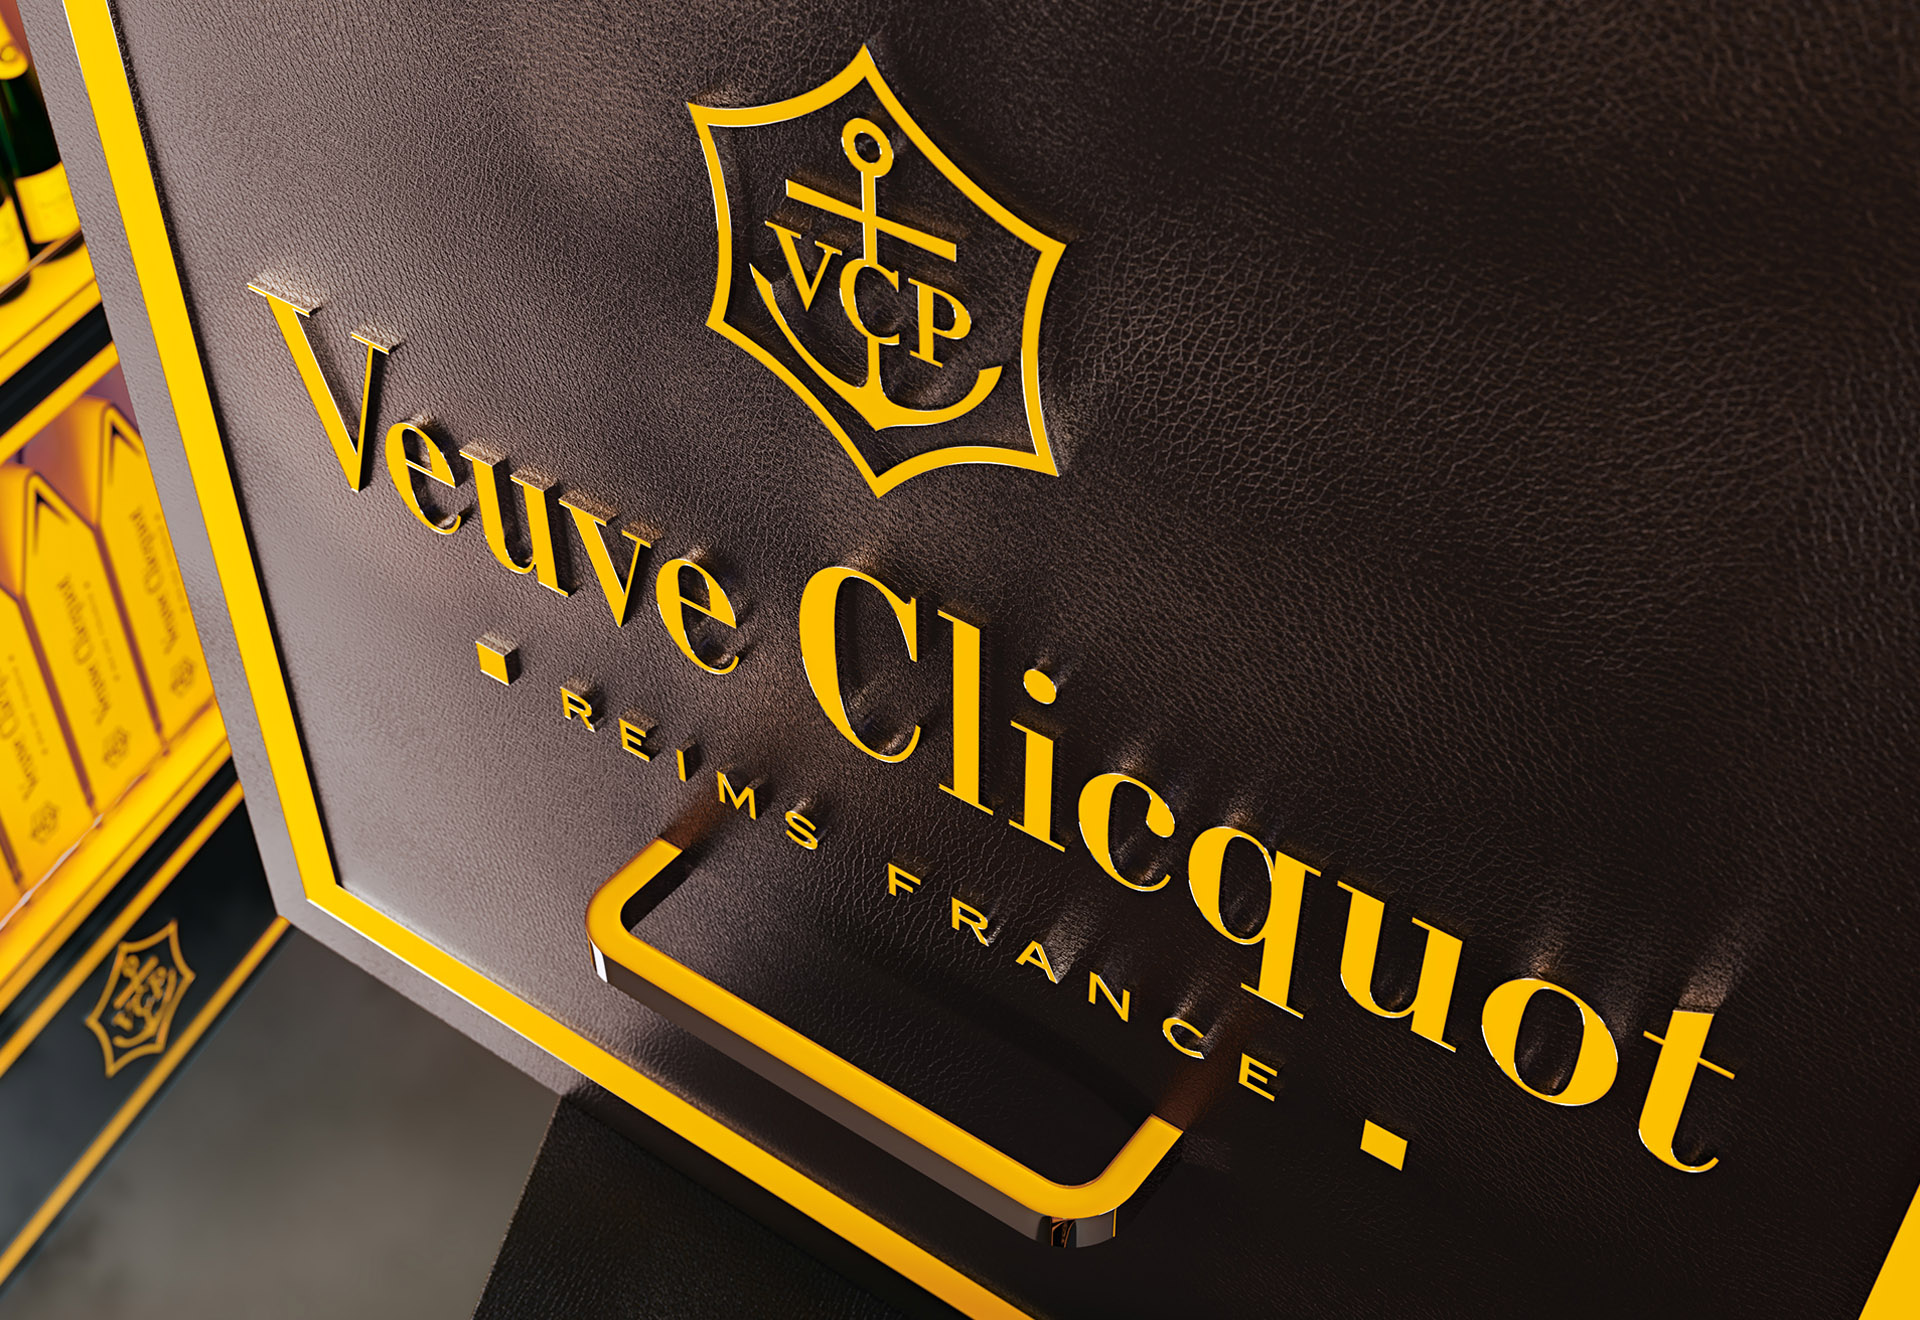 Veuve Clicquot Creative Display - DDA - project production design